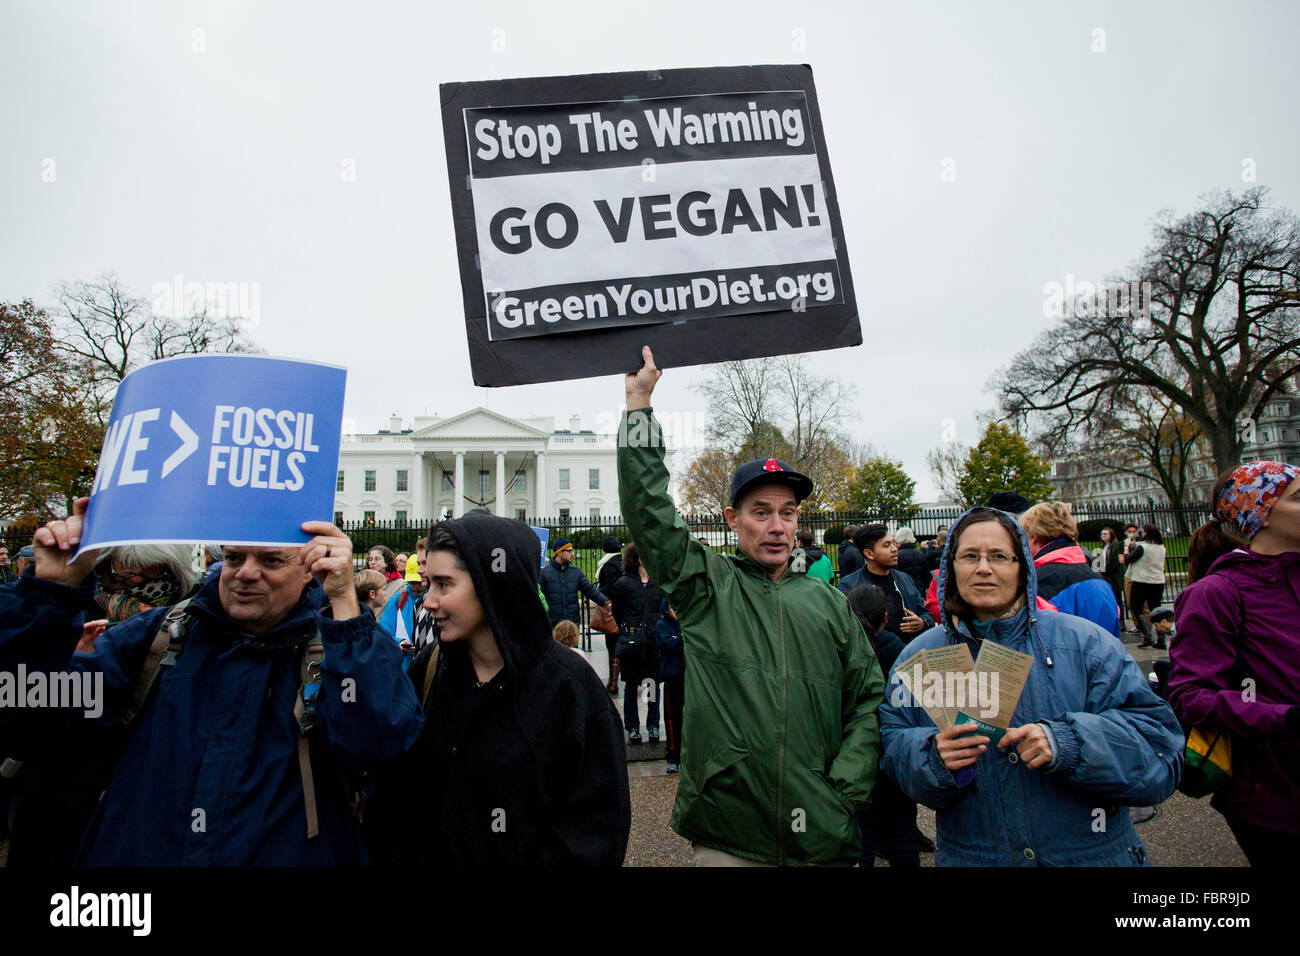 Novembre 21, 2015, Washington, DC USA : des militants de l'environnement manifestation devant la Maison Blanche (man holding 'Save notre planète, devenez-le') Banque D'Images